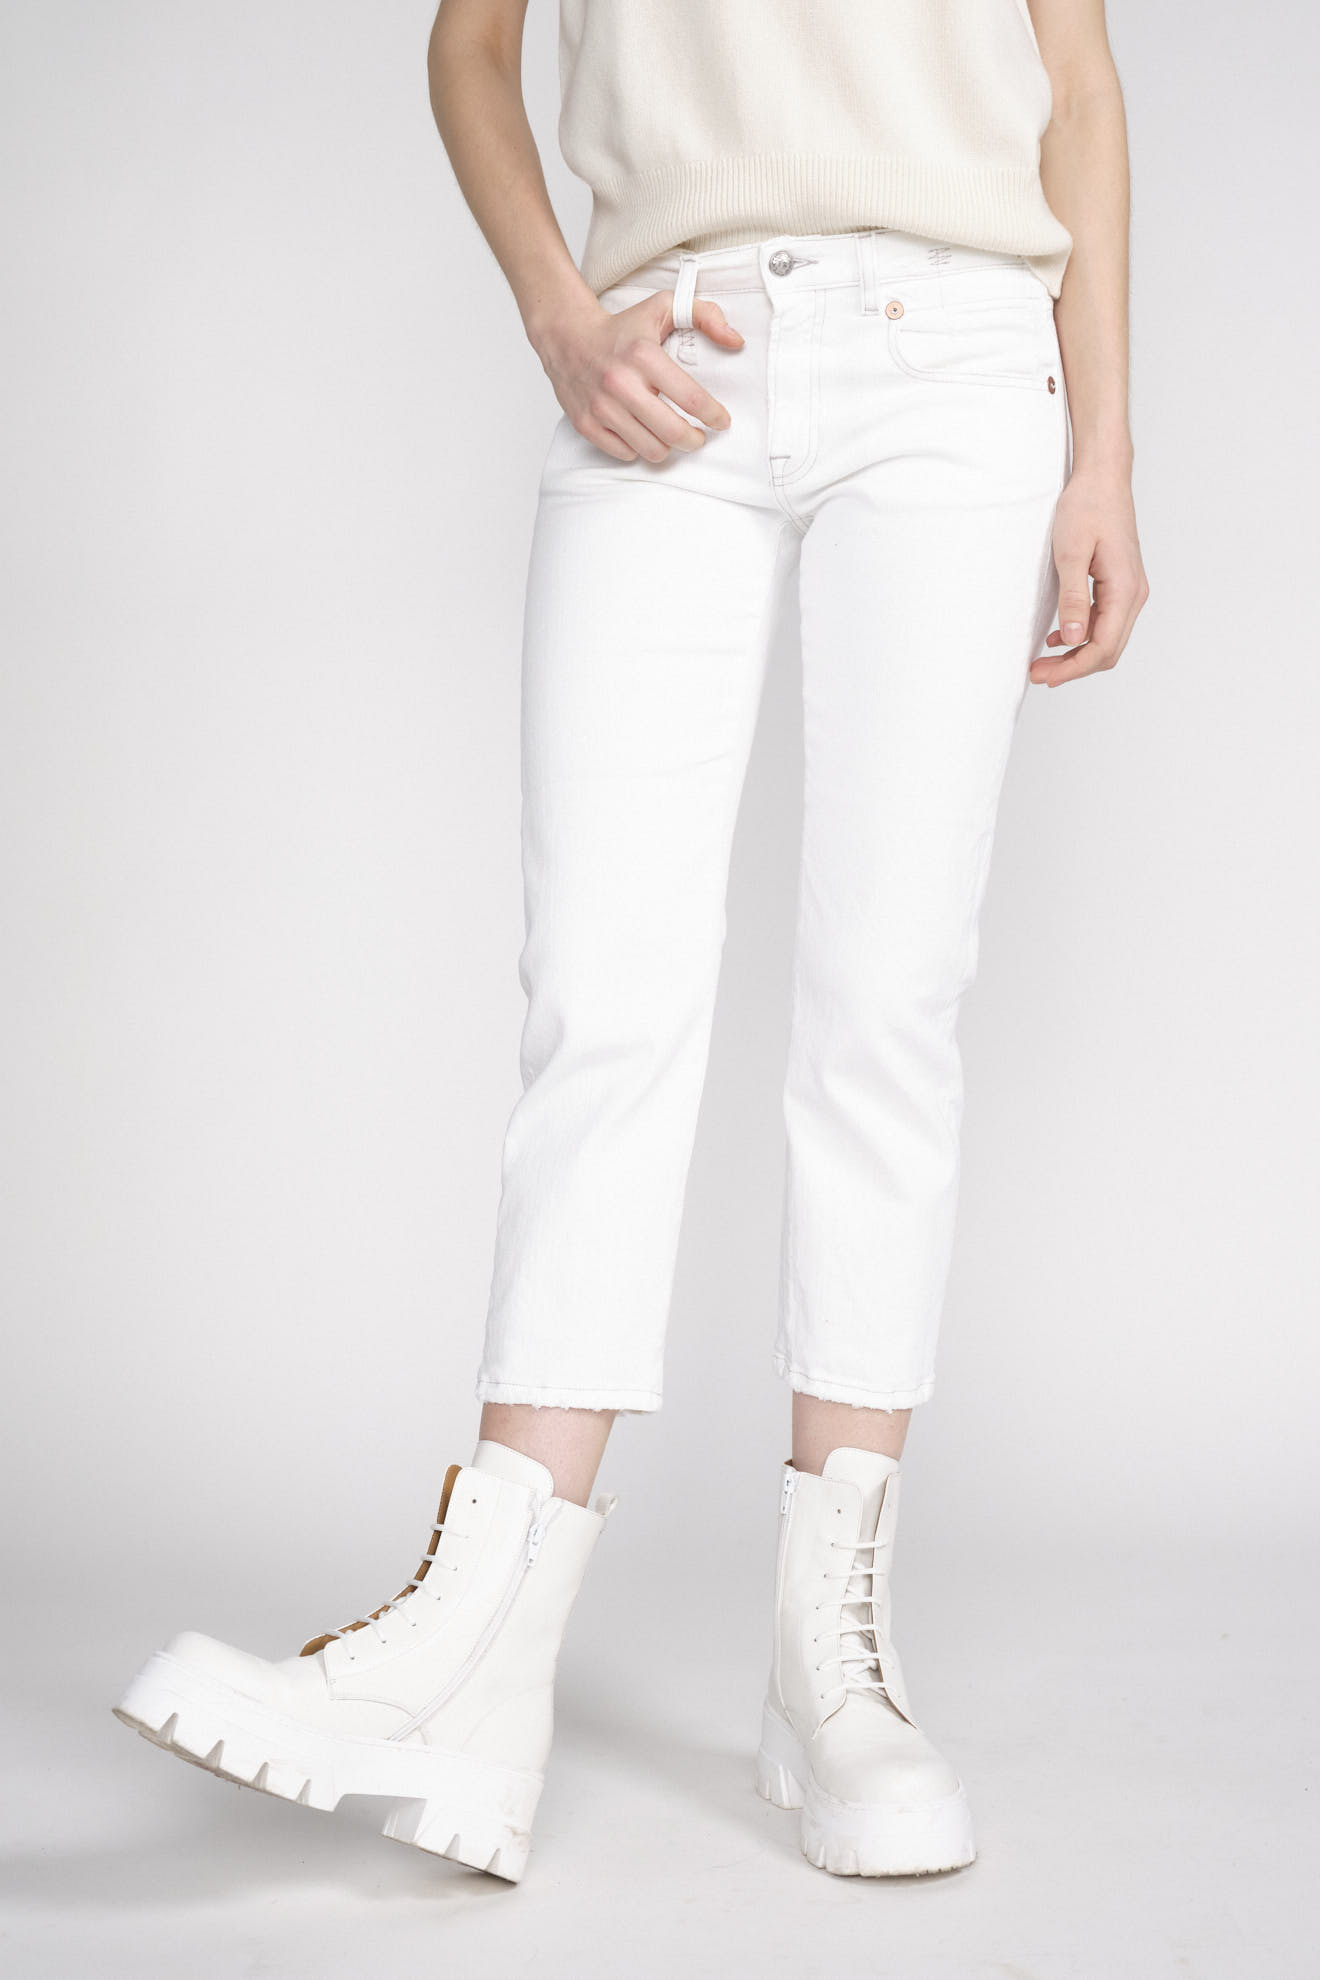 R13 Boy Straight - jeans in cotone usato bianco 25